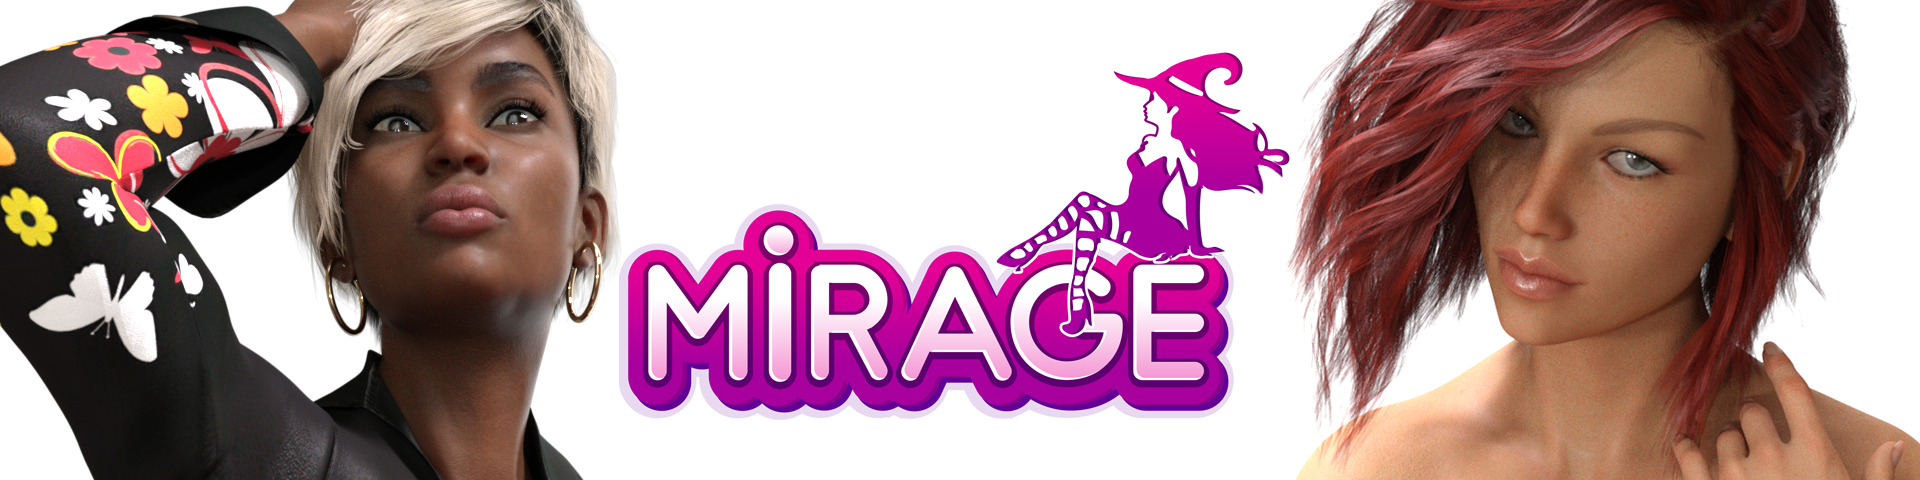 MIRAGE - Next Gen VR/PC Porn Game